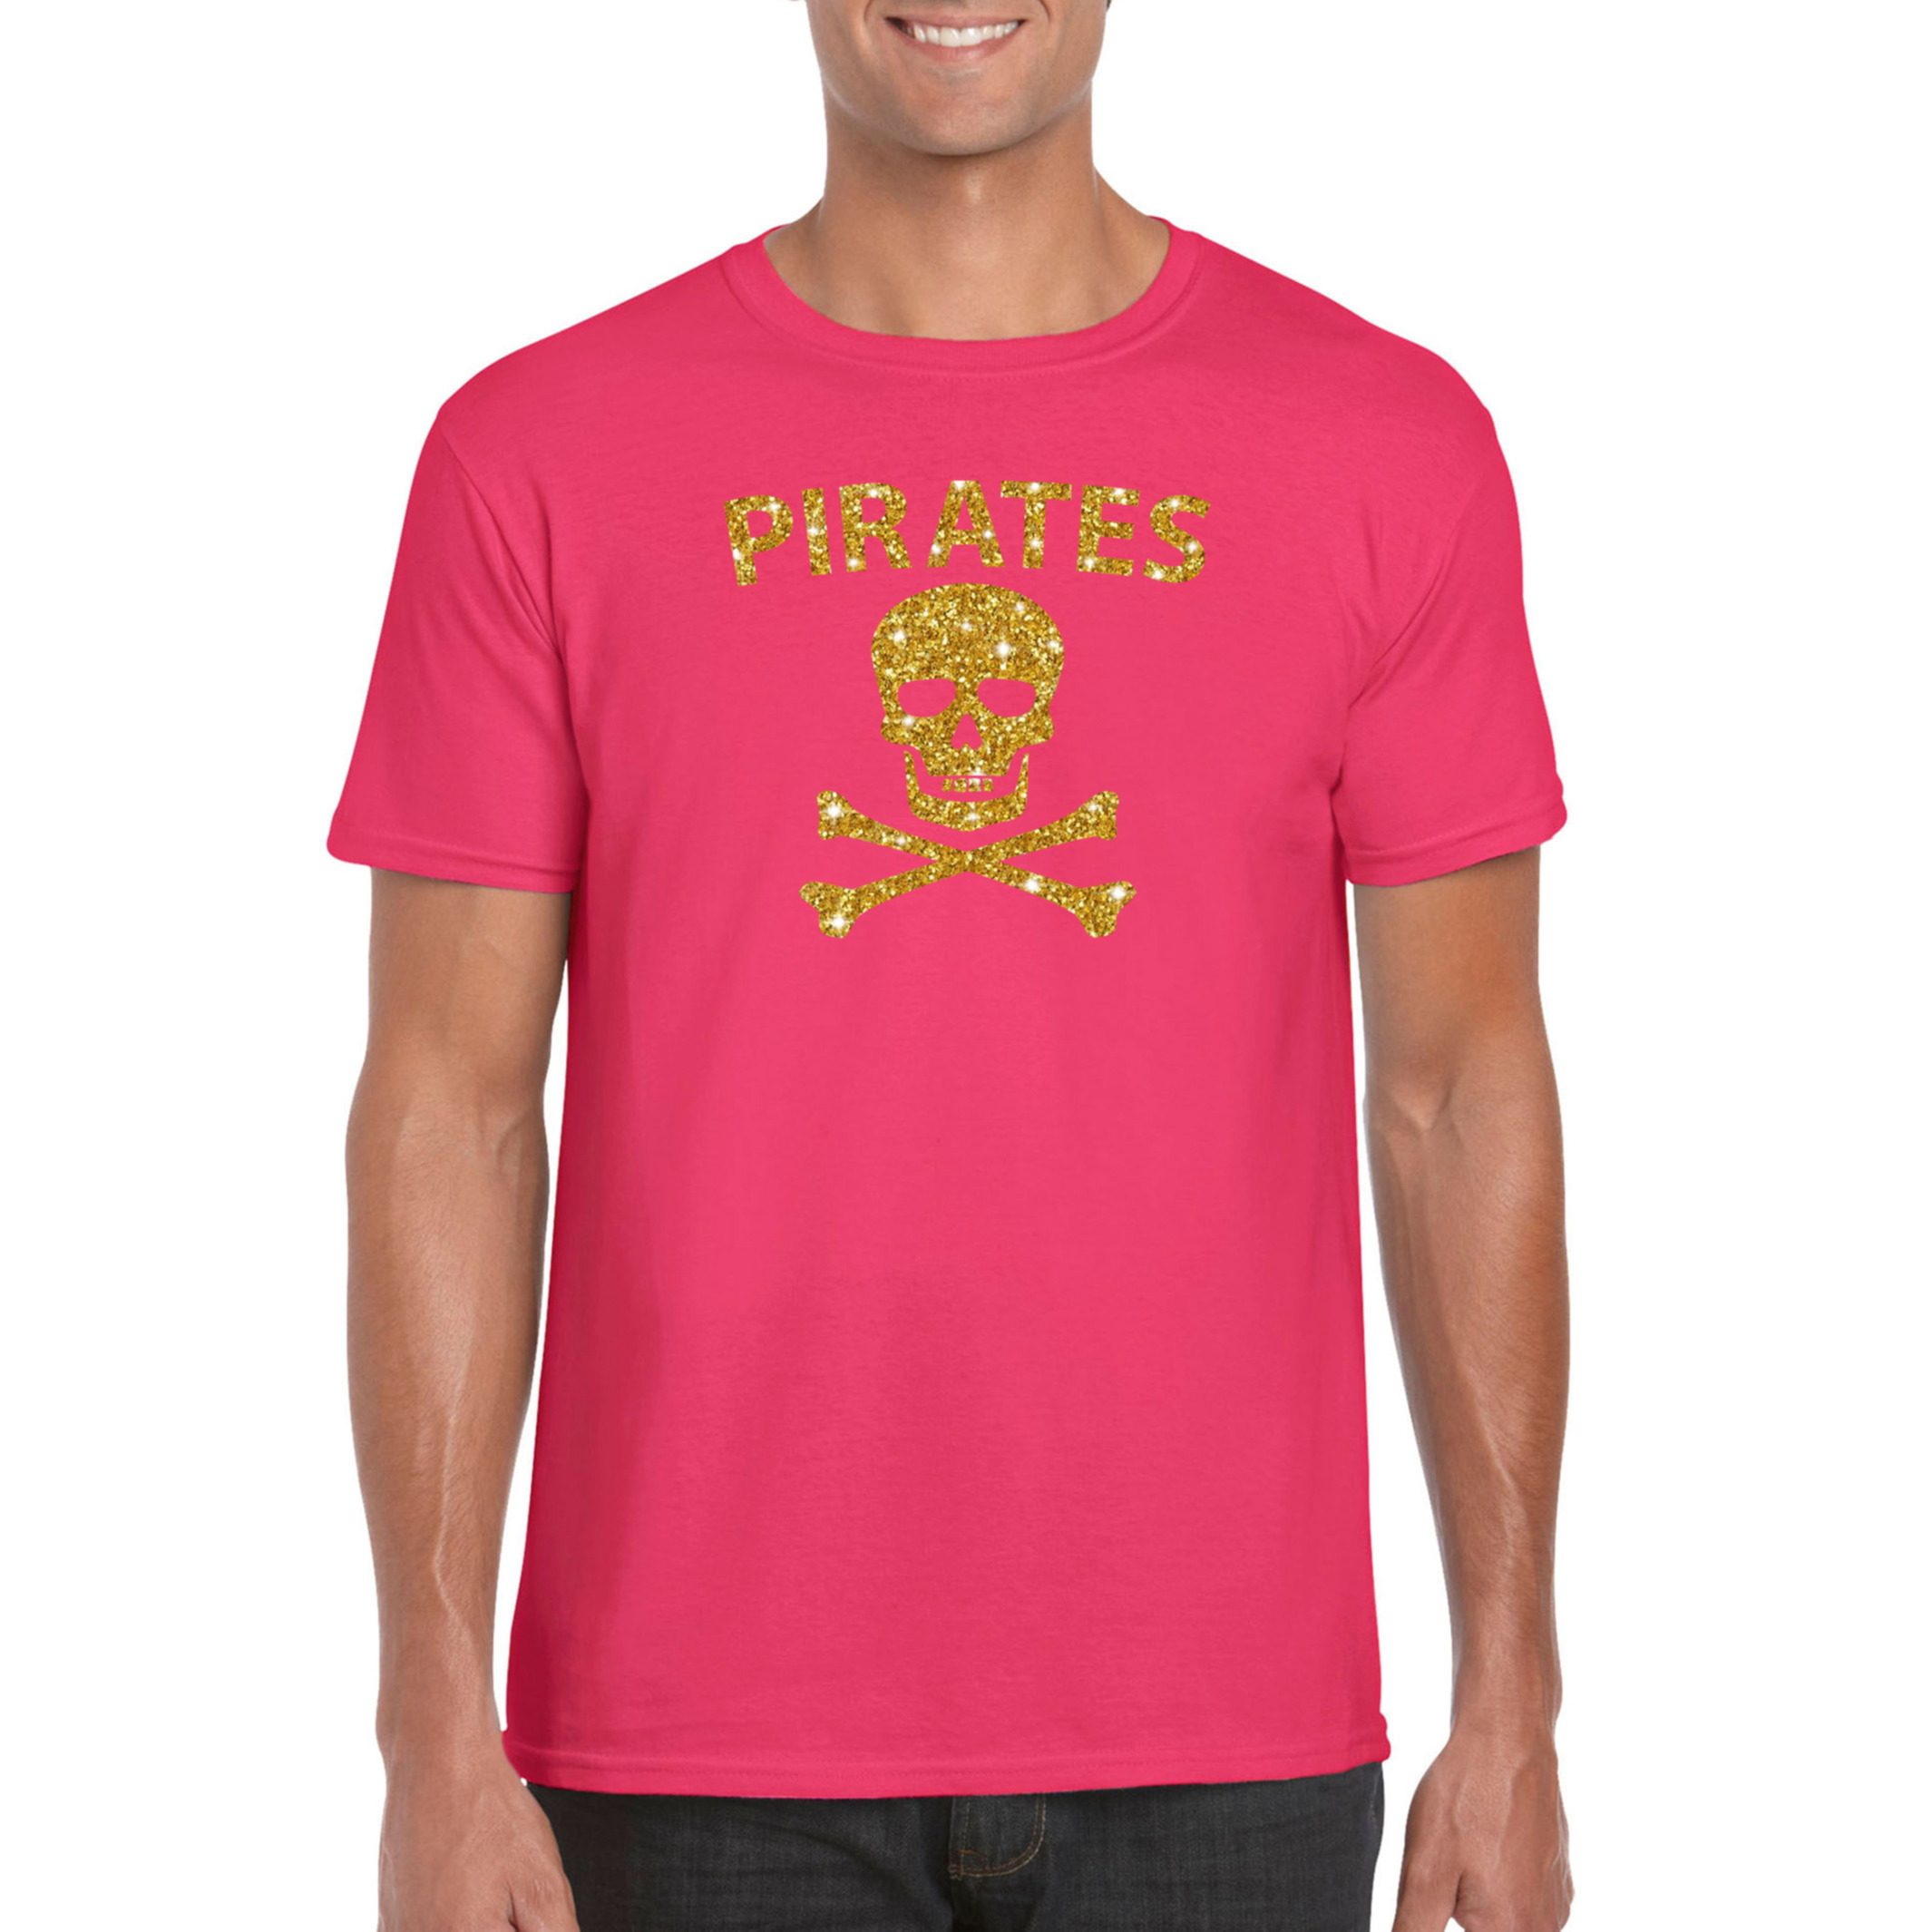 Piraten shirt / foute party verkleed kostuum / outfit goud glitter roze heren